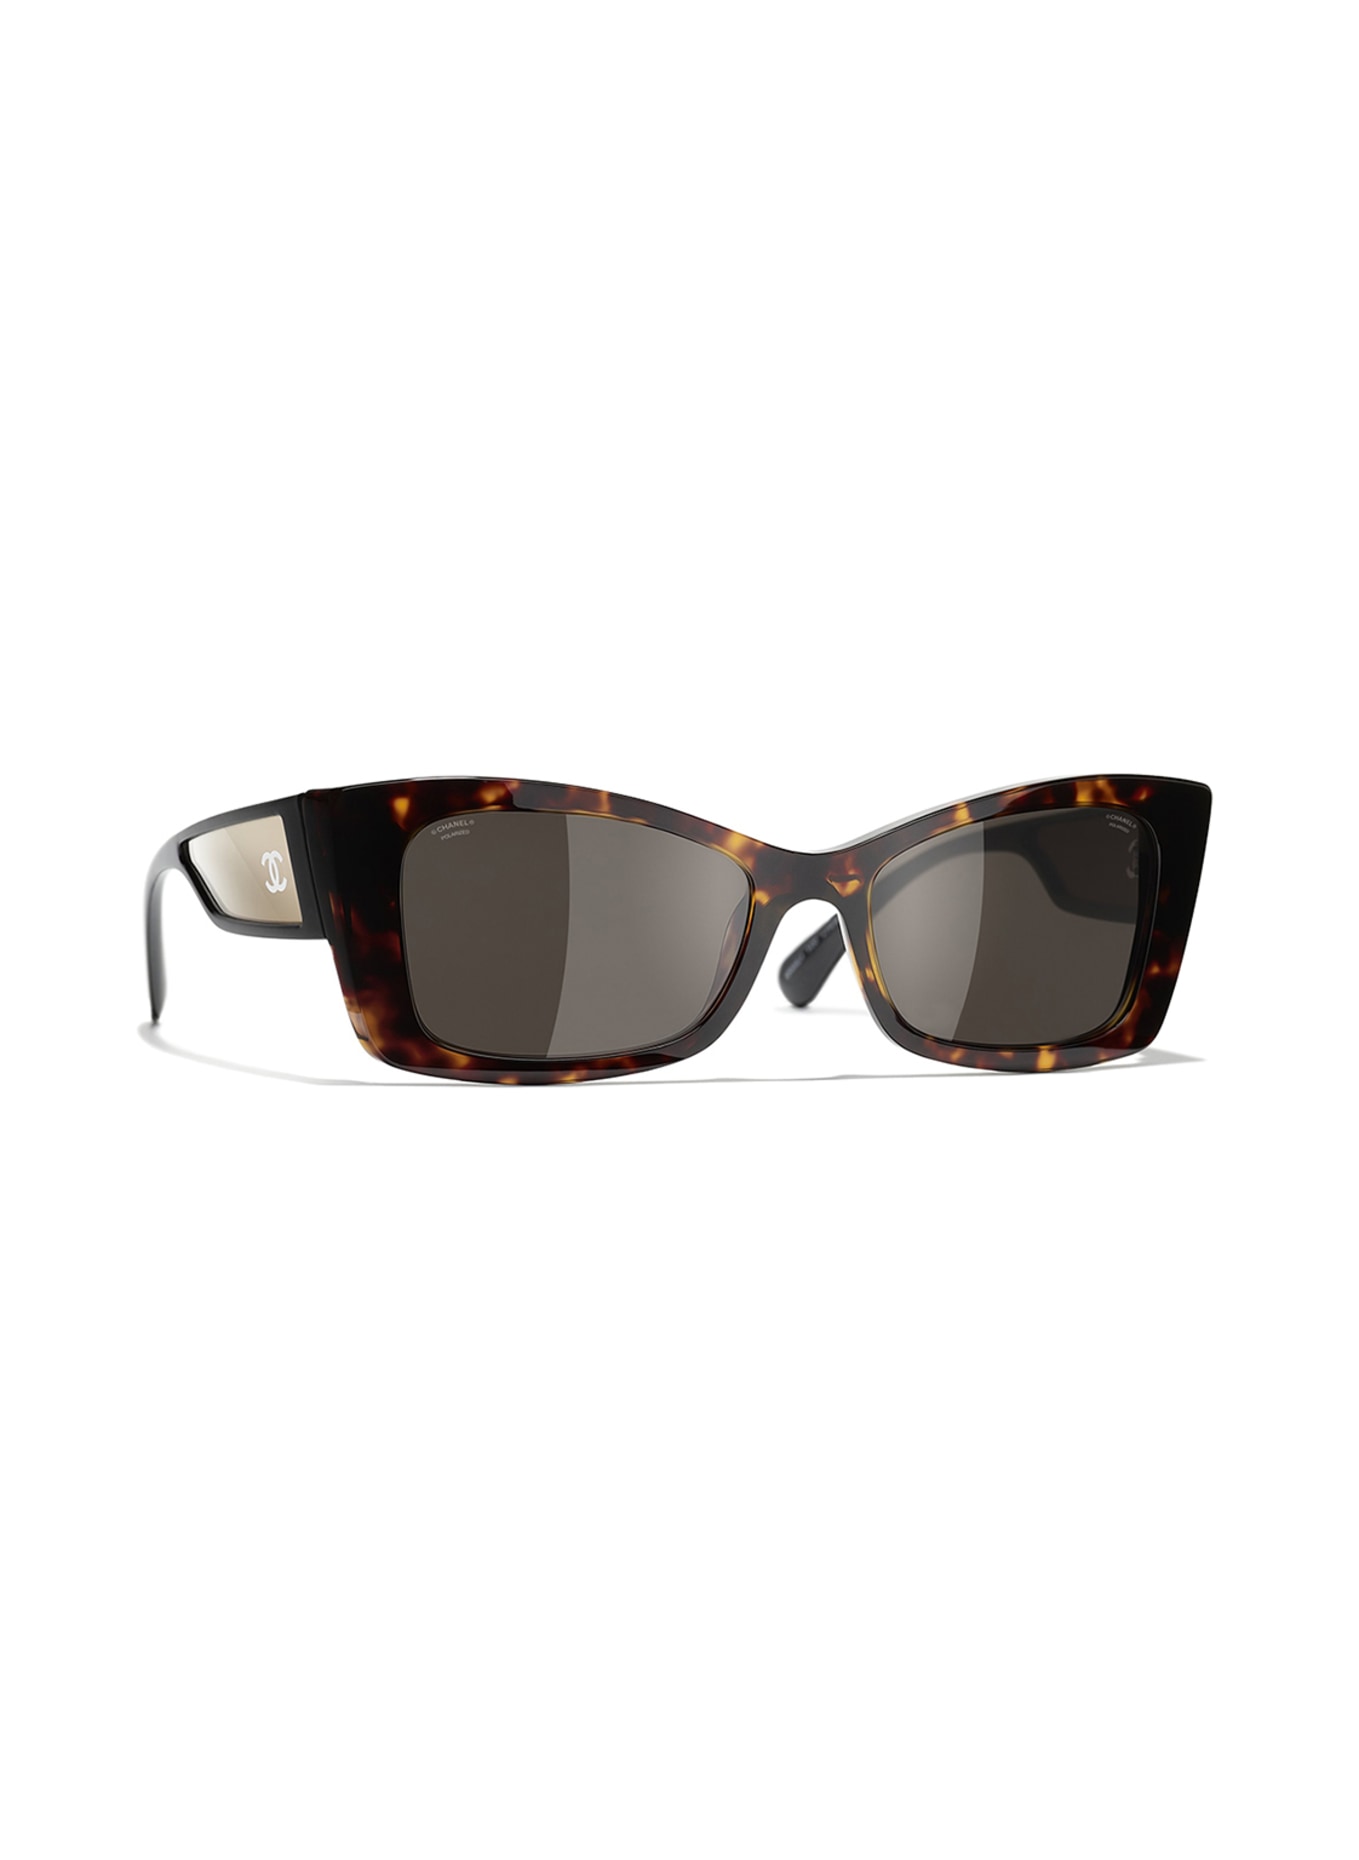 Chanel - Butterfly Sunglasses - Brown Gray Gradient - Chanel Eyewear -  Avvenice